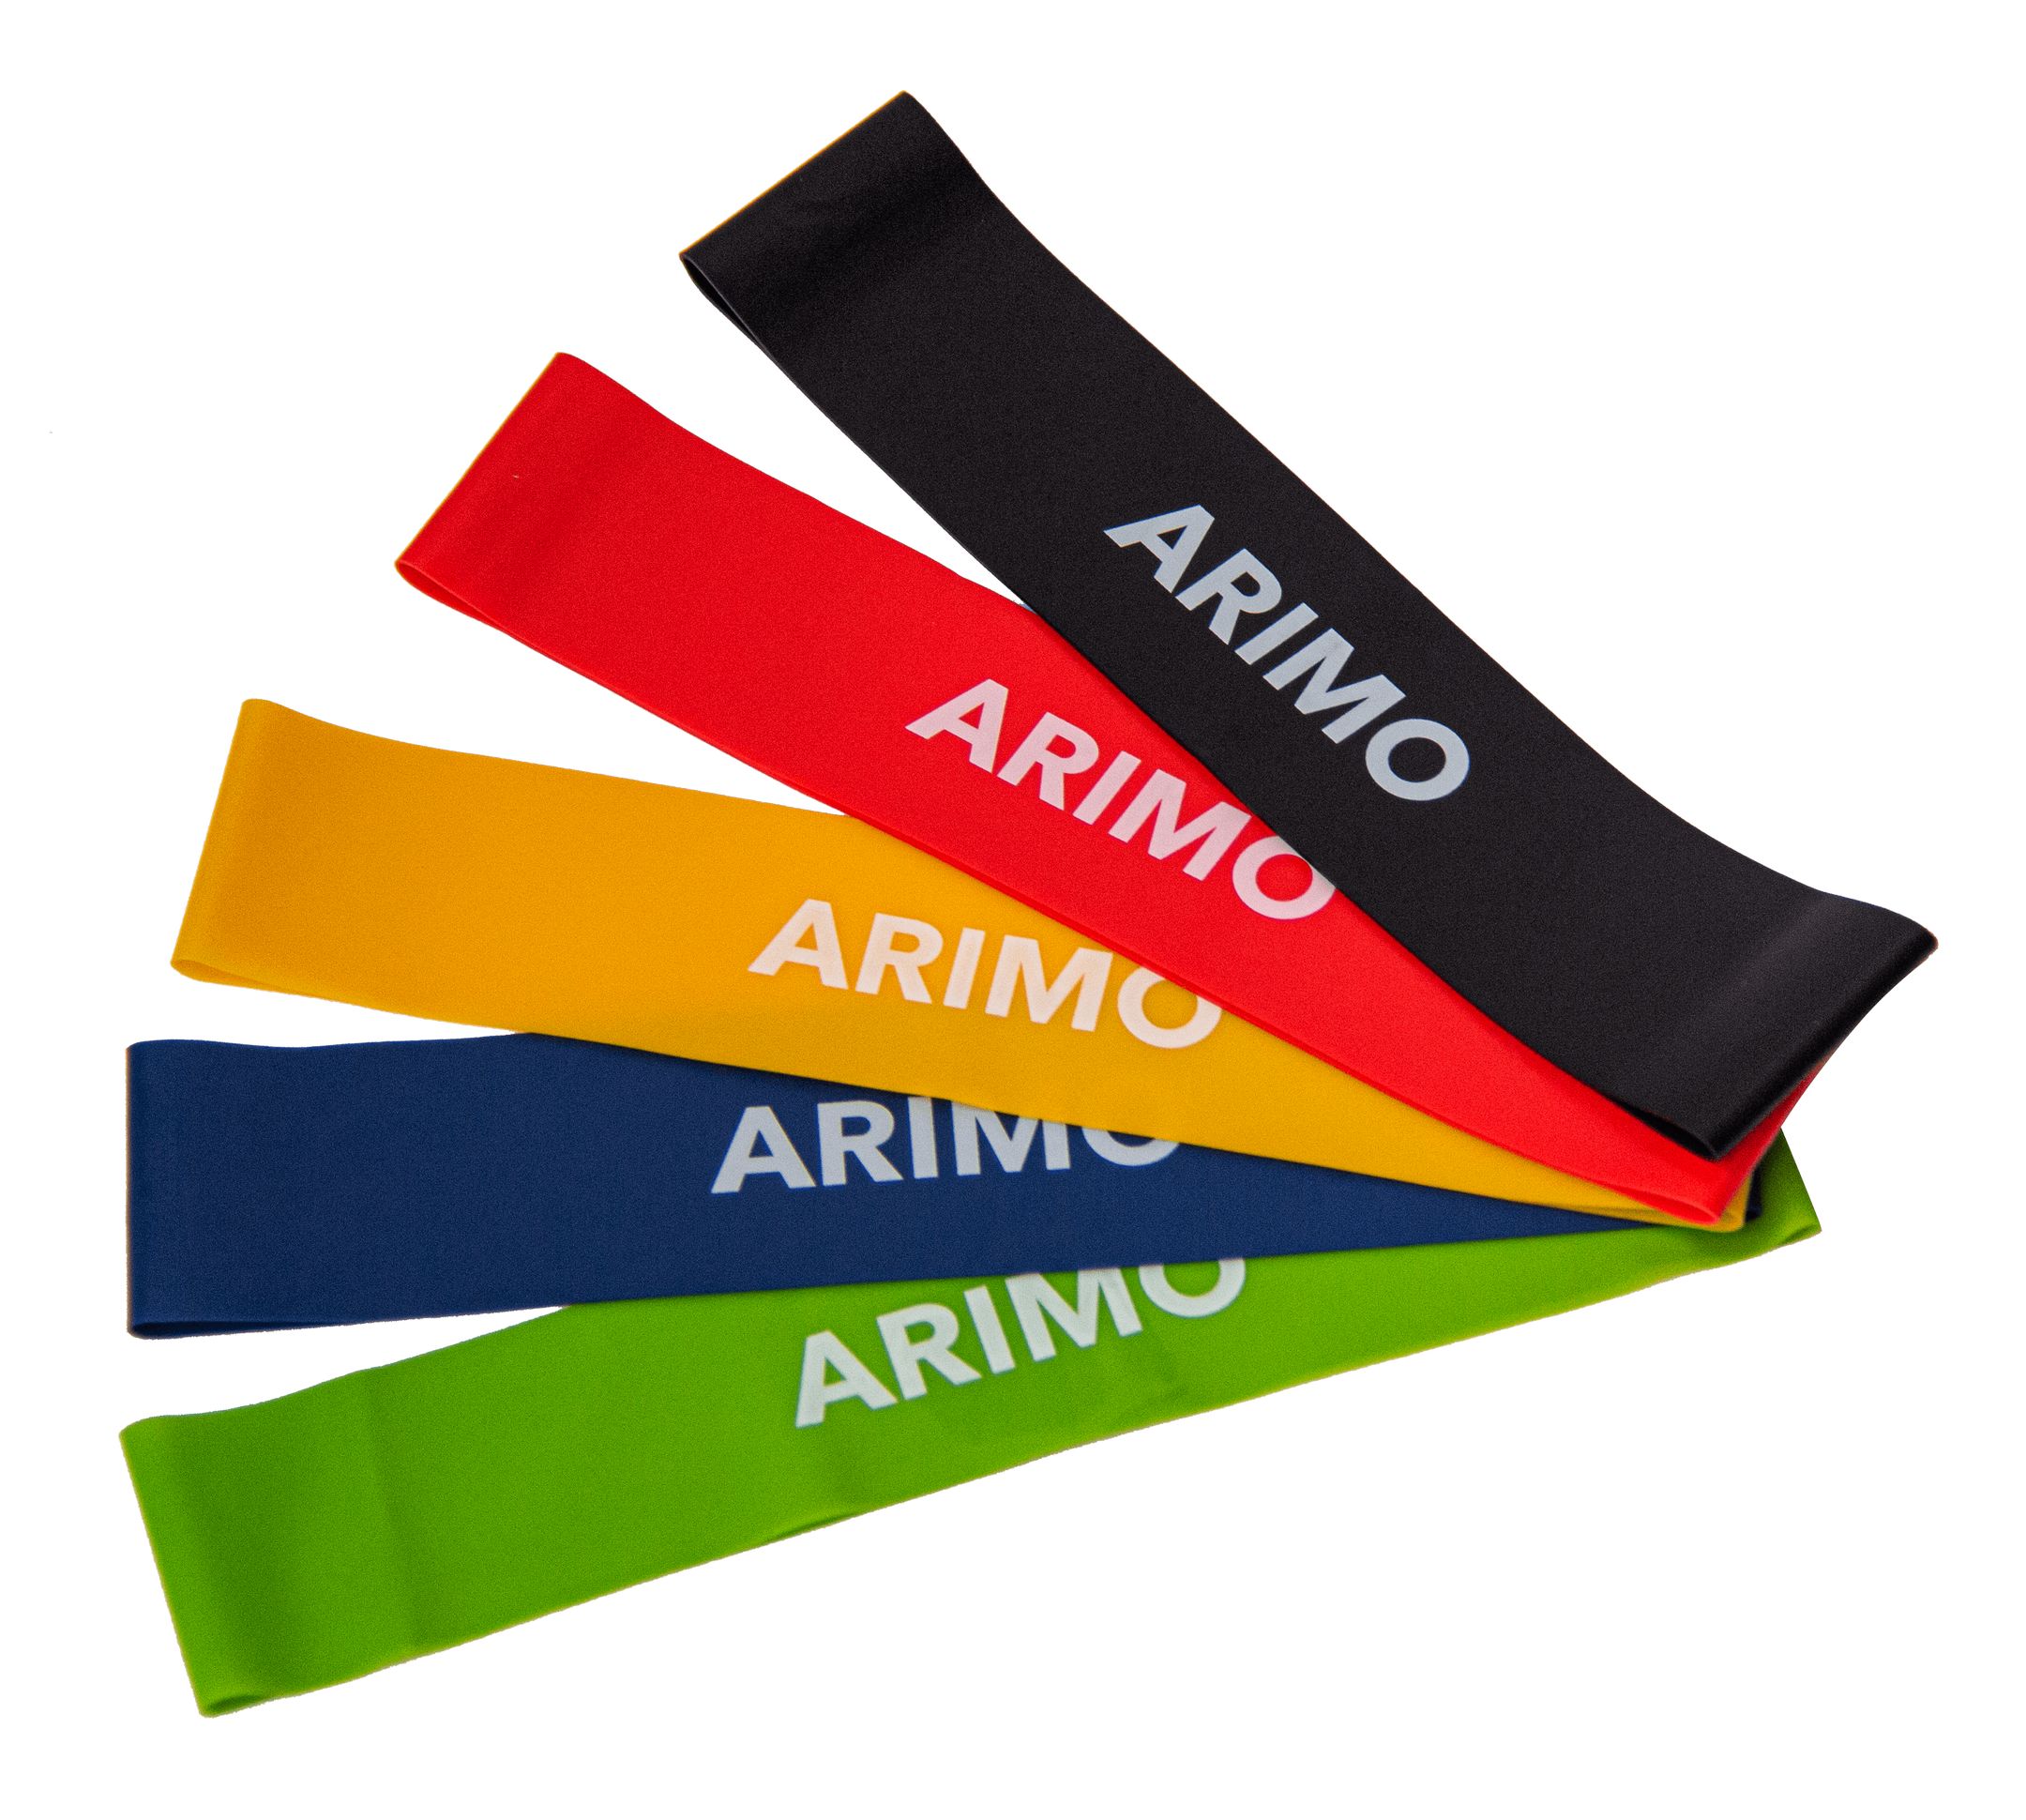 Arimo Action Kit de Loop Bands 5 Resistências - Arimo